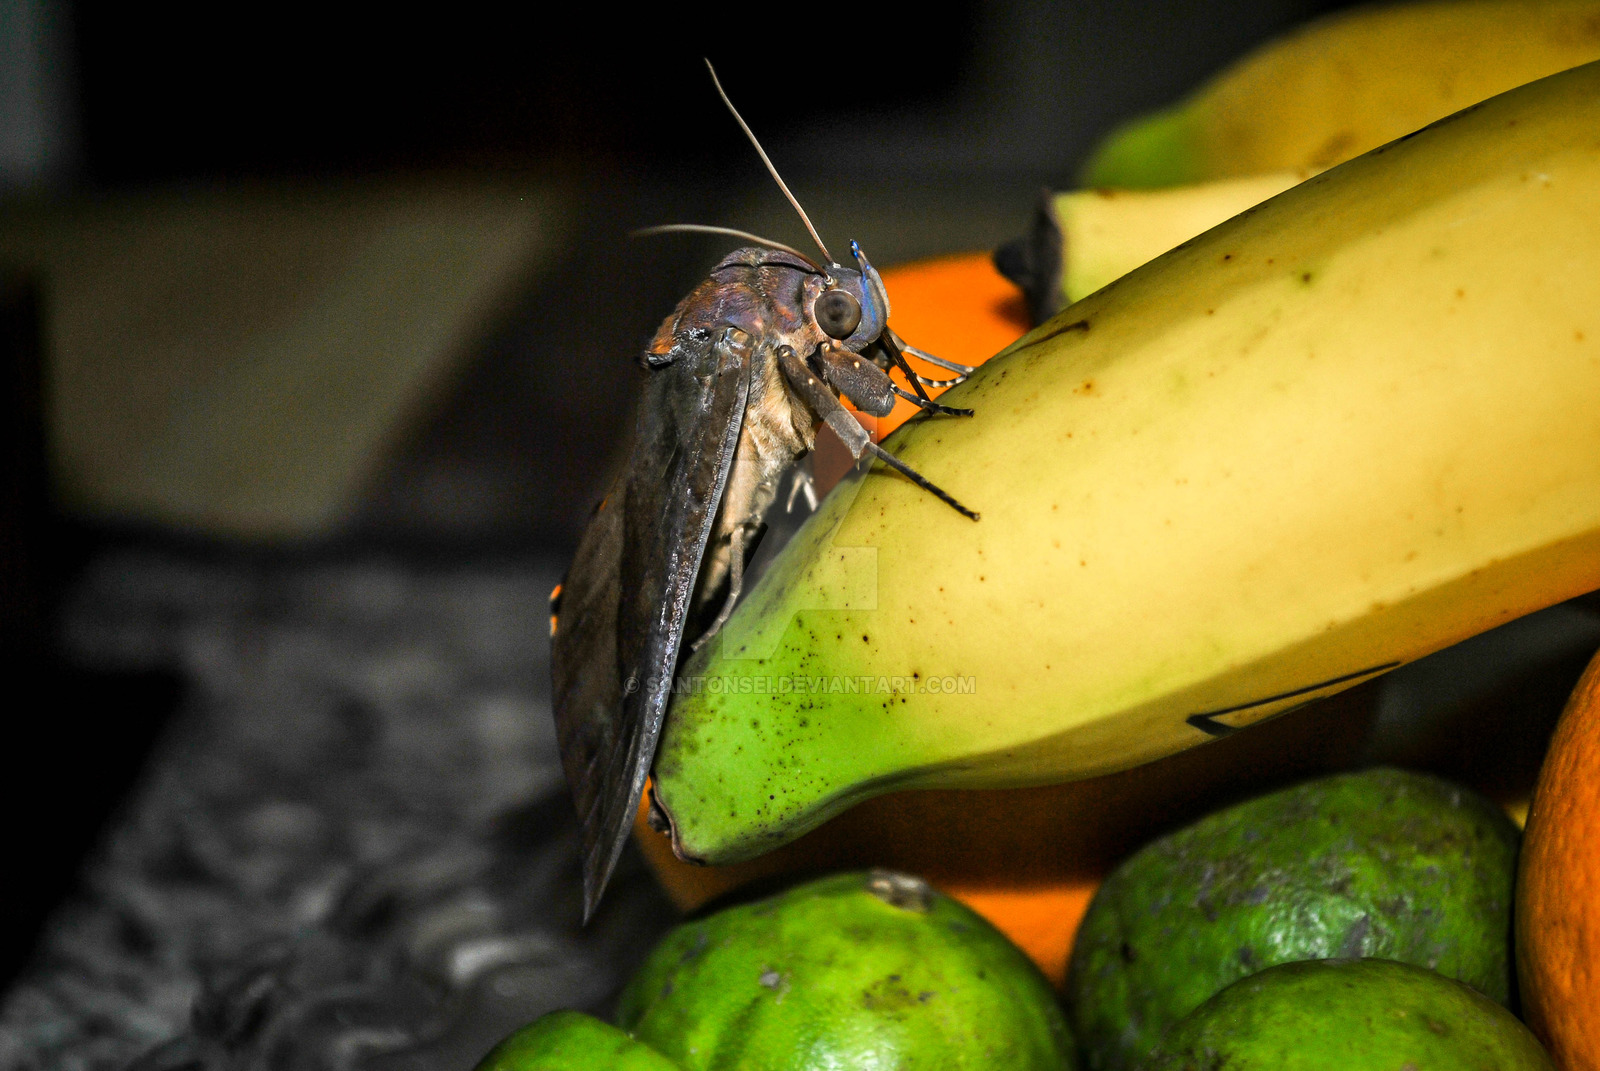 Huge moth eating a banana